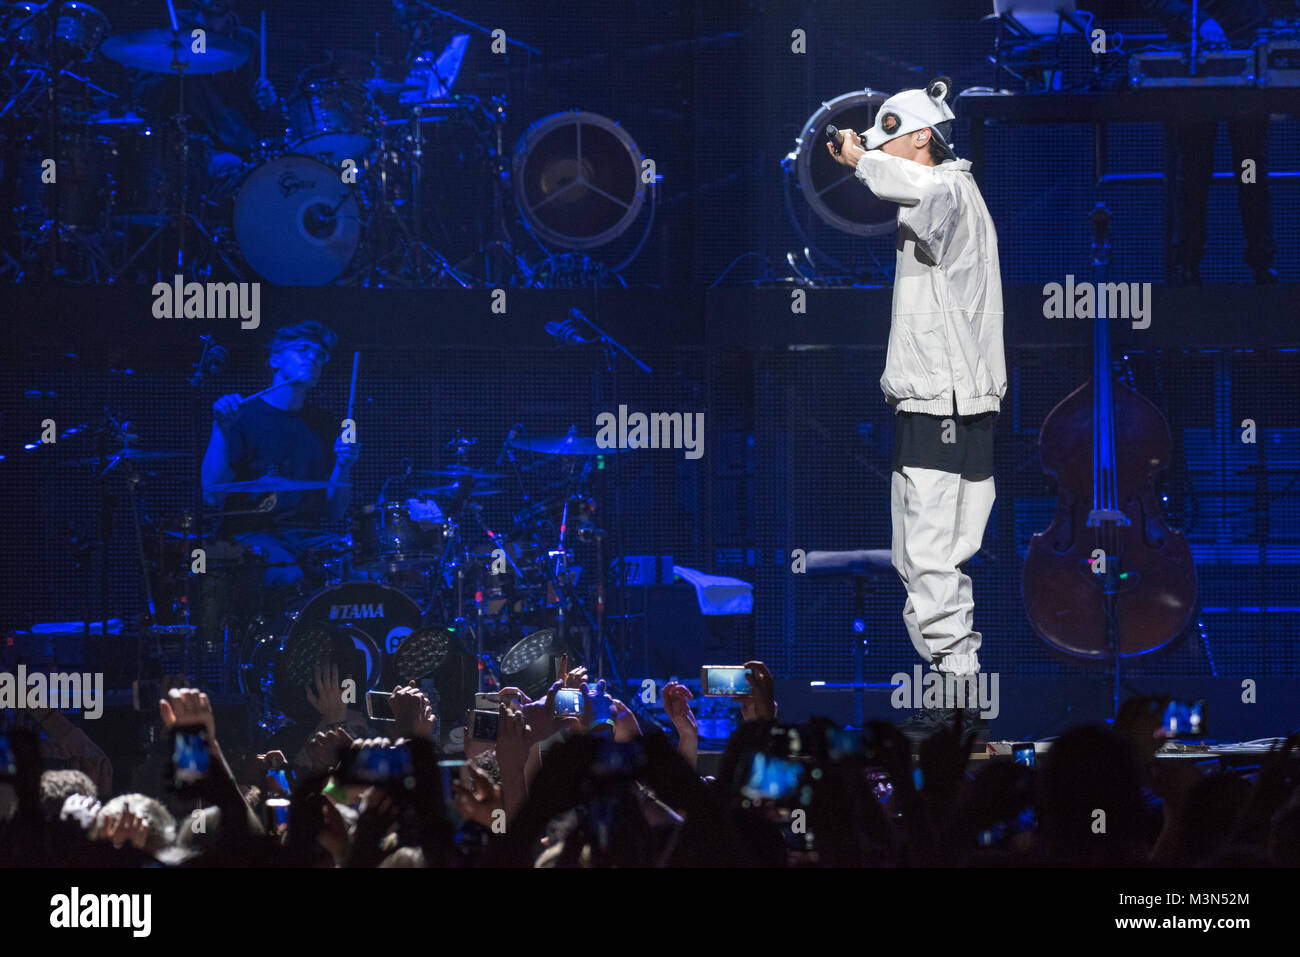 Der deutsche Rapper Cro spielt am 18.12.2016 ein Konzert in der SAP-Arena Mannheim. Stock Photo